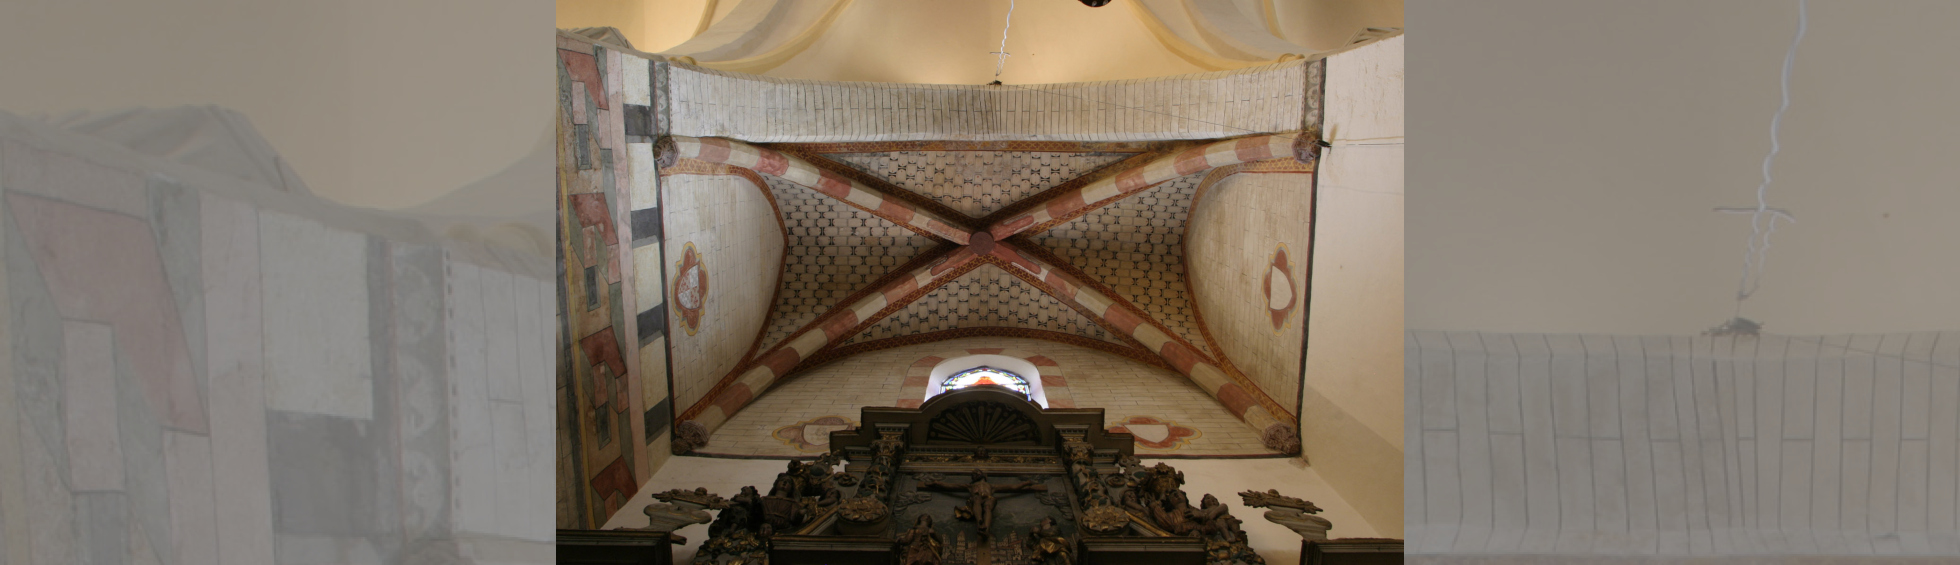 L'église Notre-Dame de la Réal: voute à croisée d'ogive d'une autre chapelle